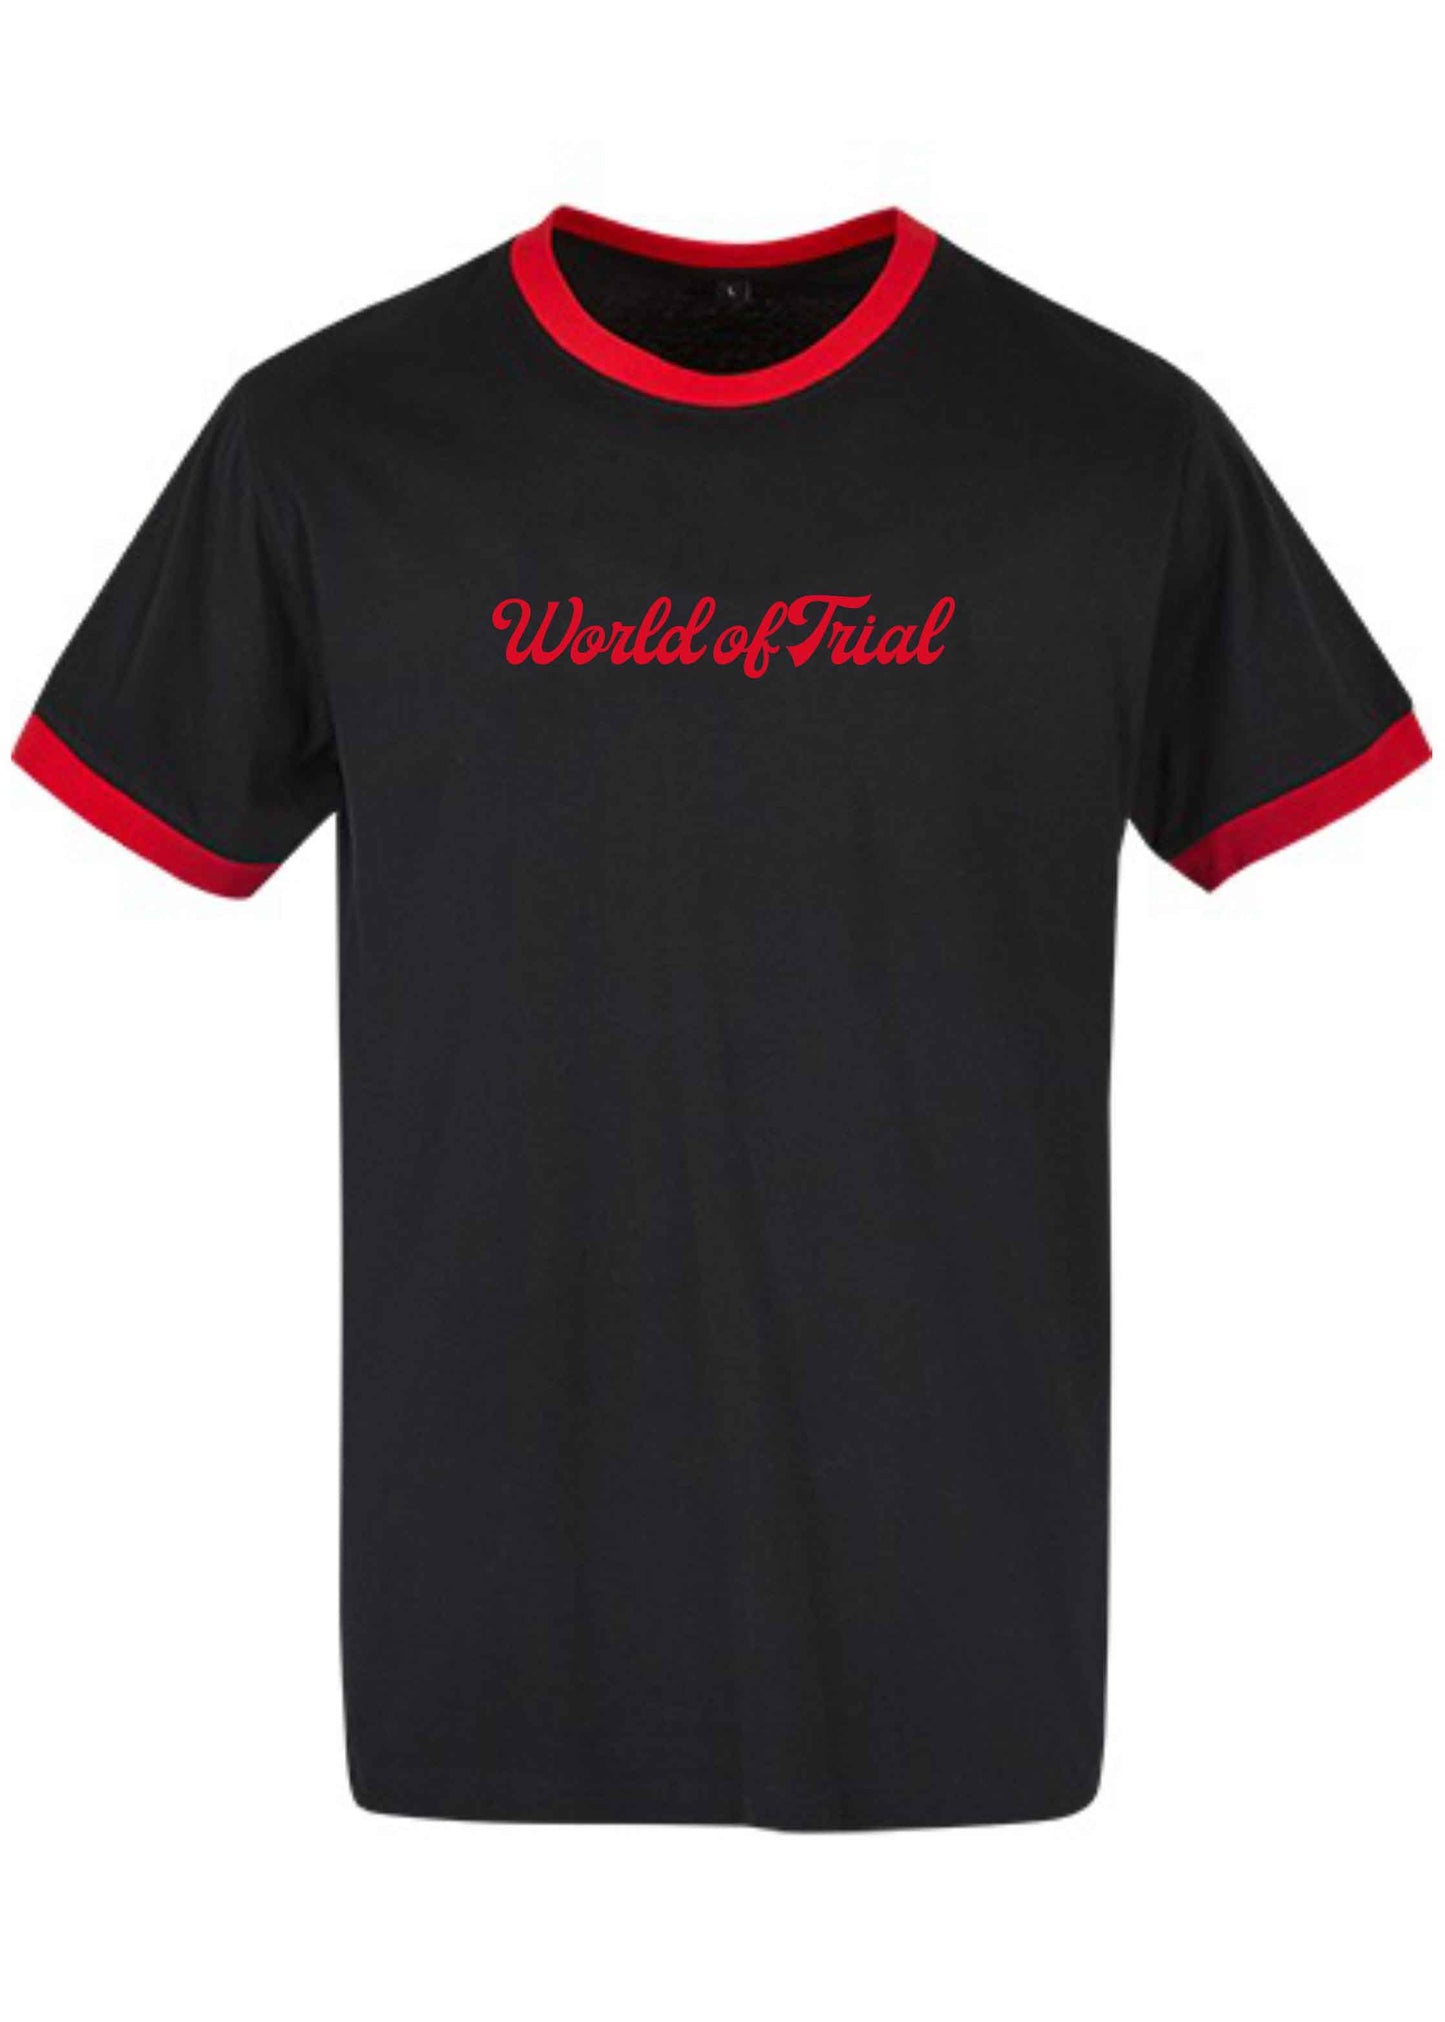 Schwarzes Retro Shirt mit roten Bündchen und rotem World of Trial Schriftzug